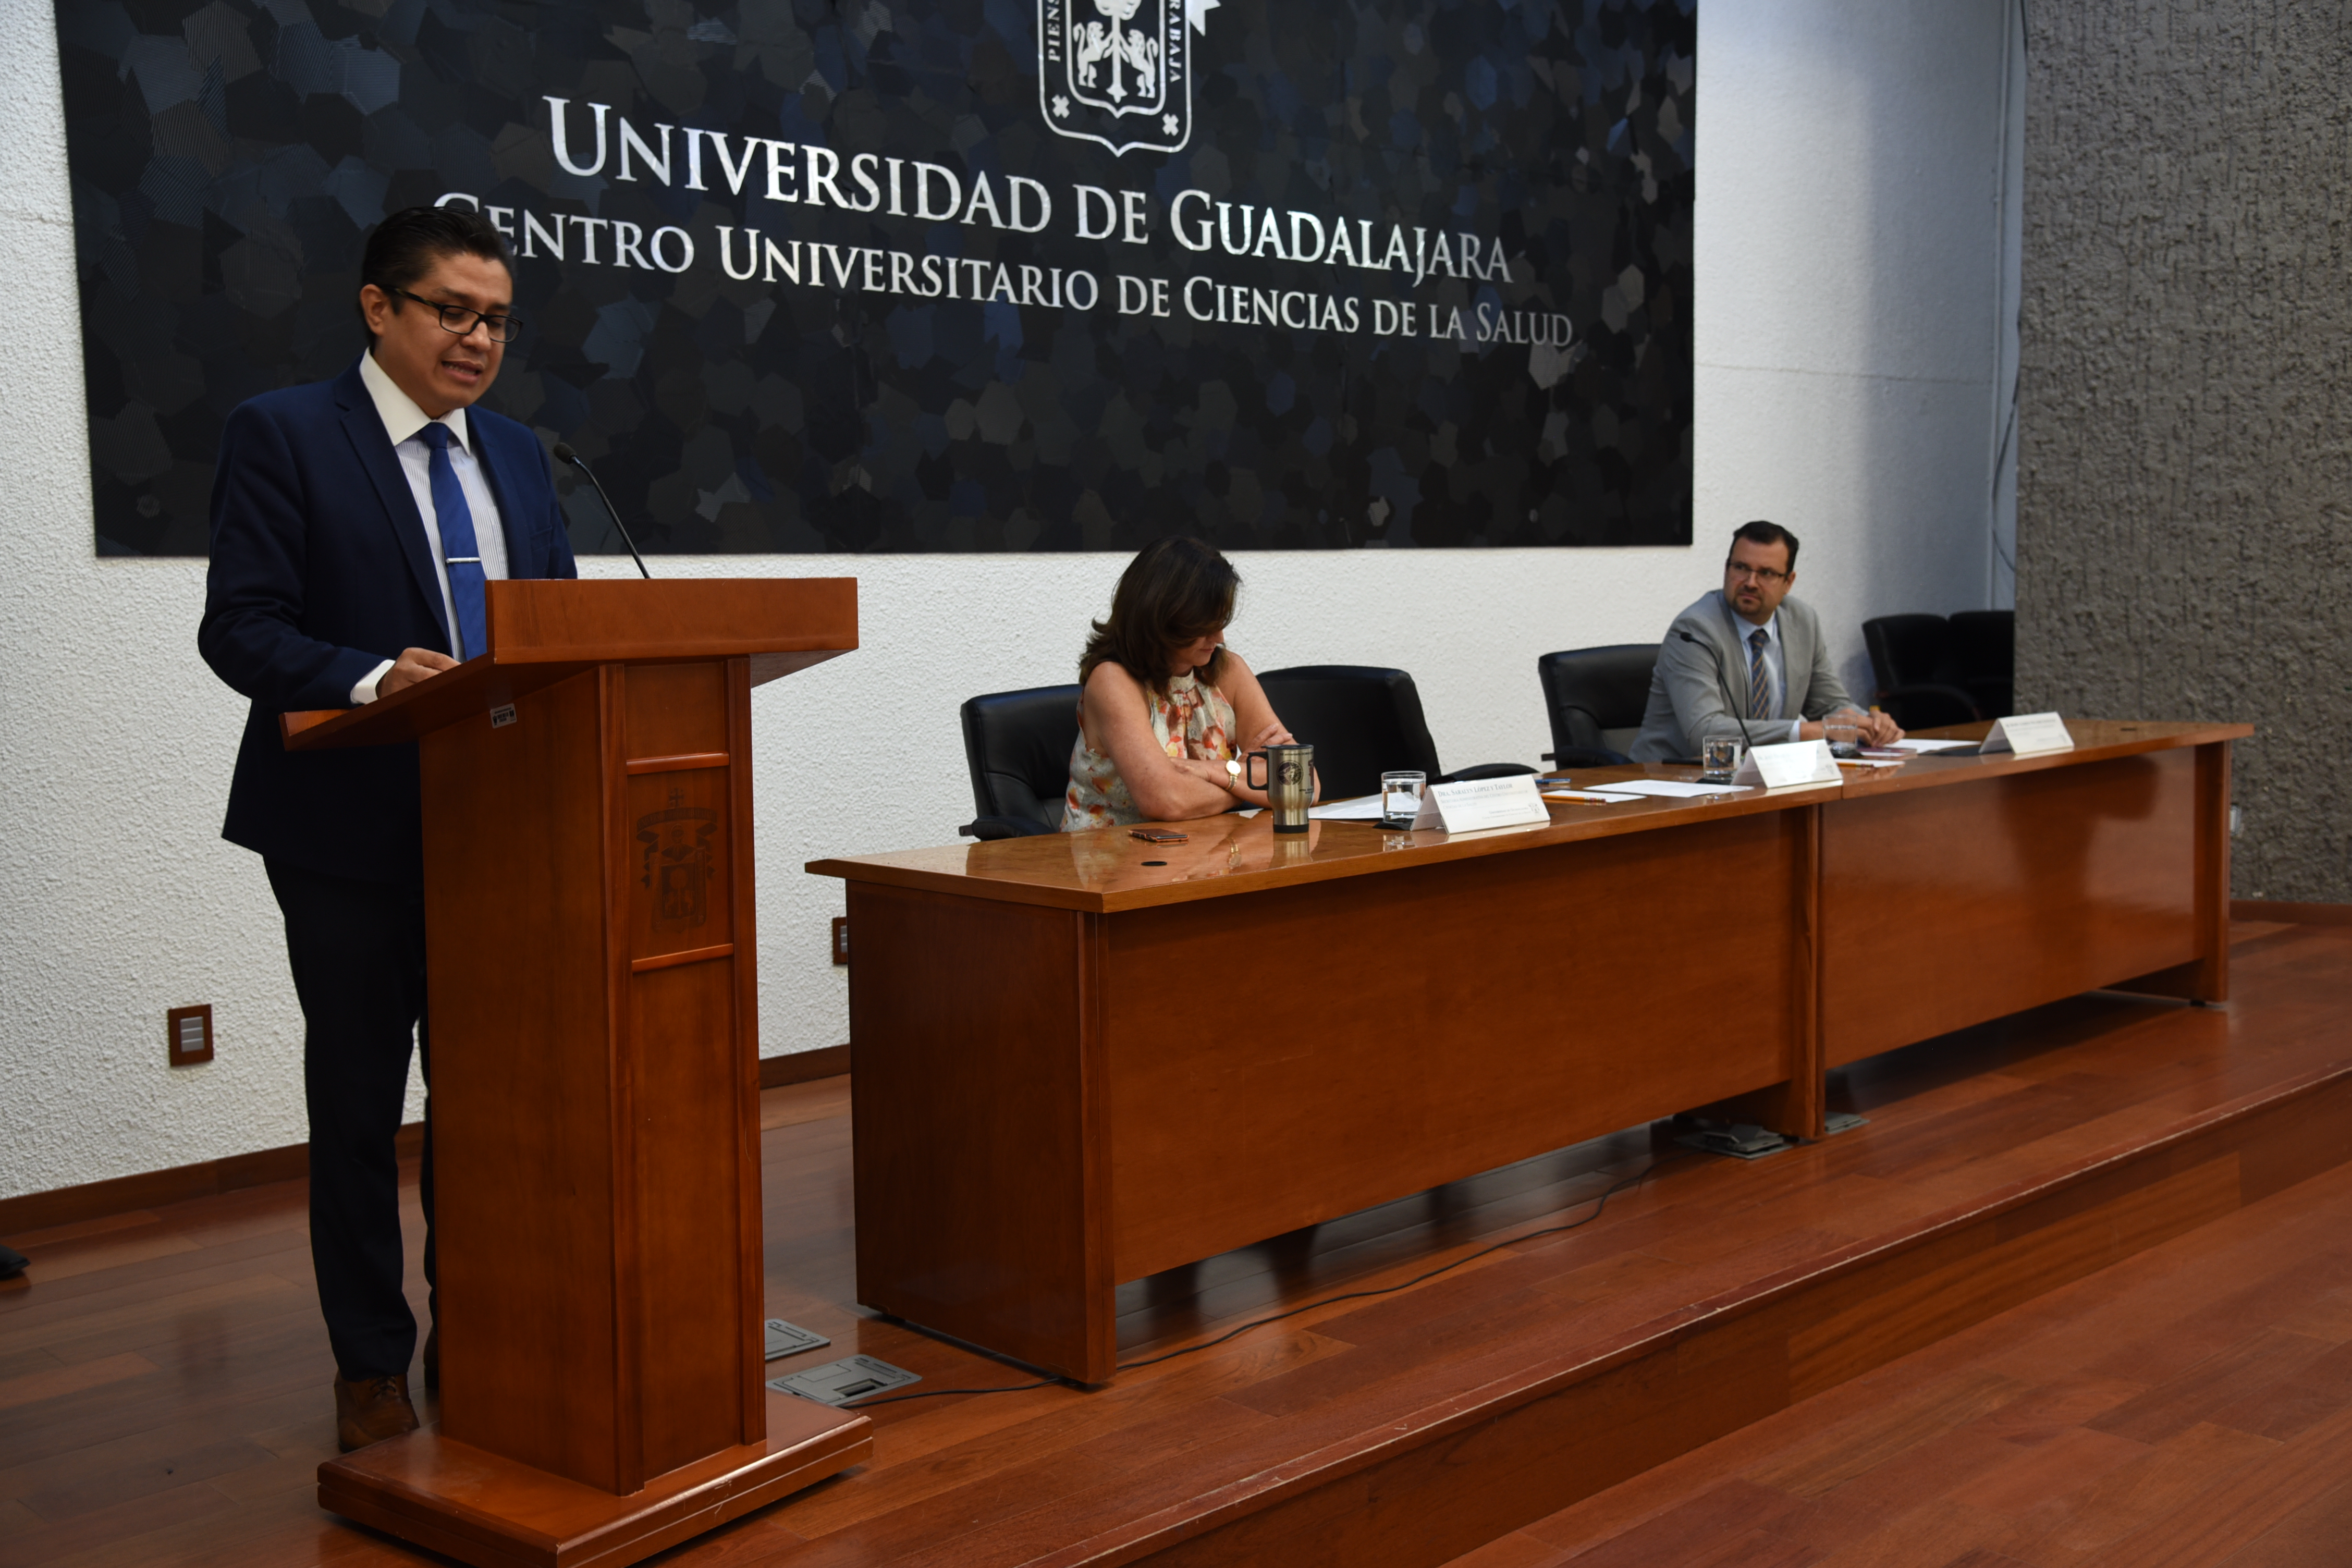 Dr. José Francisco Muñoz Valle dando discurso desde el pódium, al fondo los secretarios del CUCS en mesa del presídium